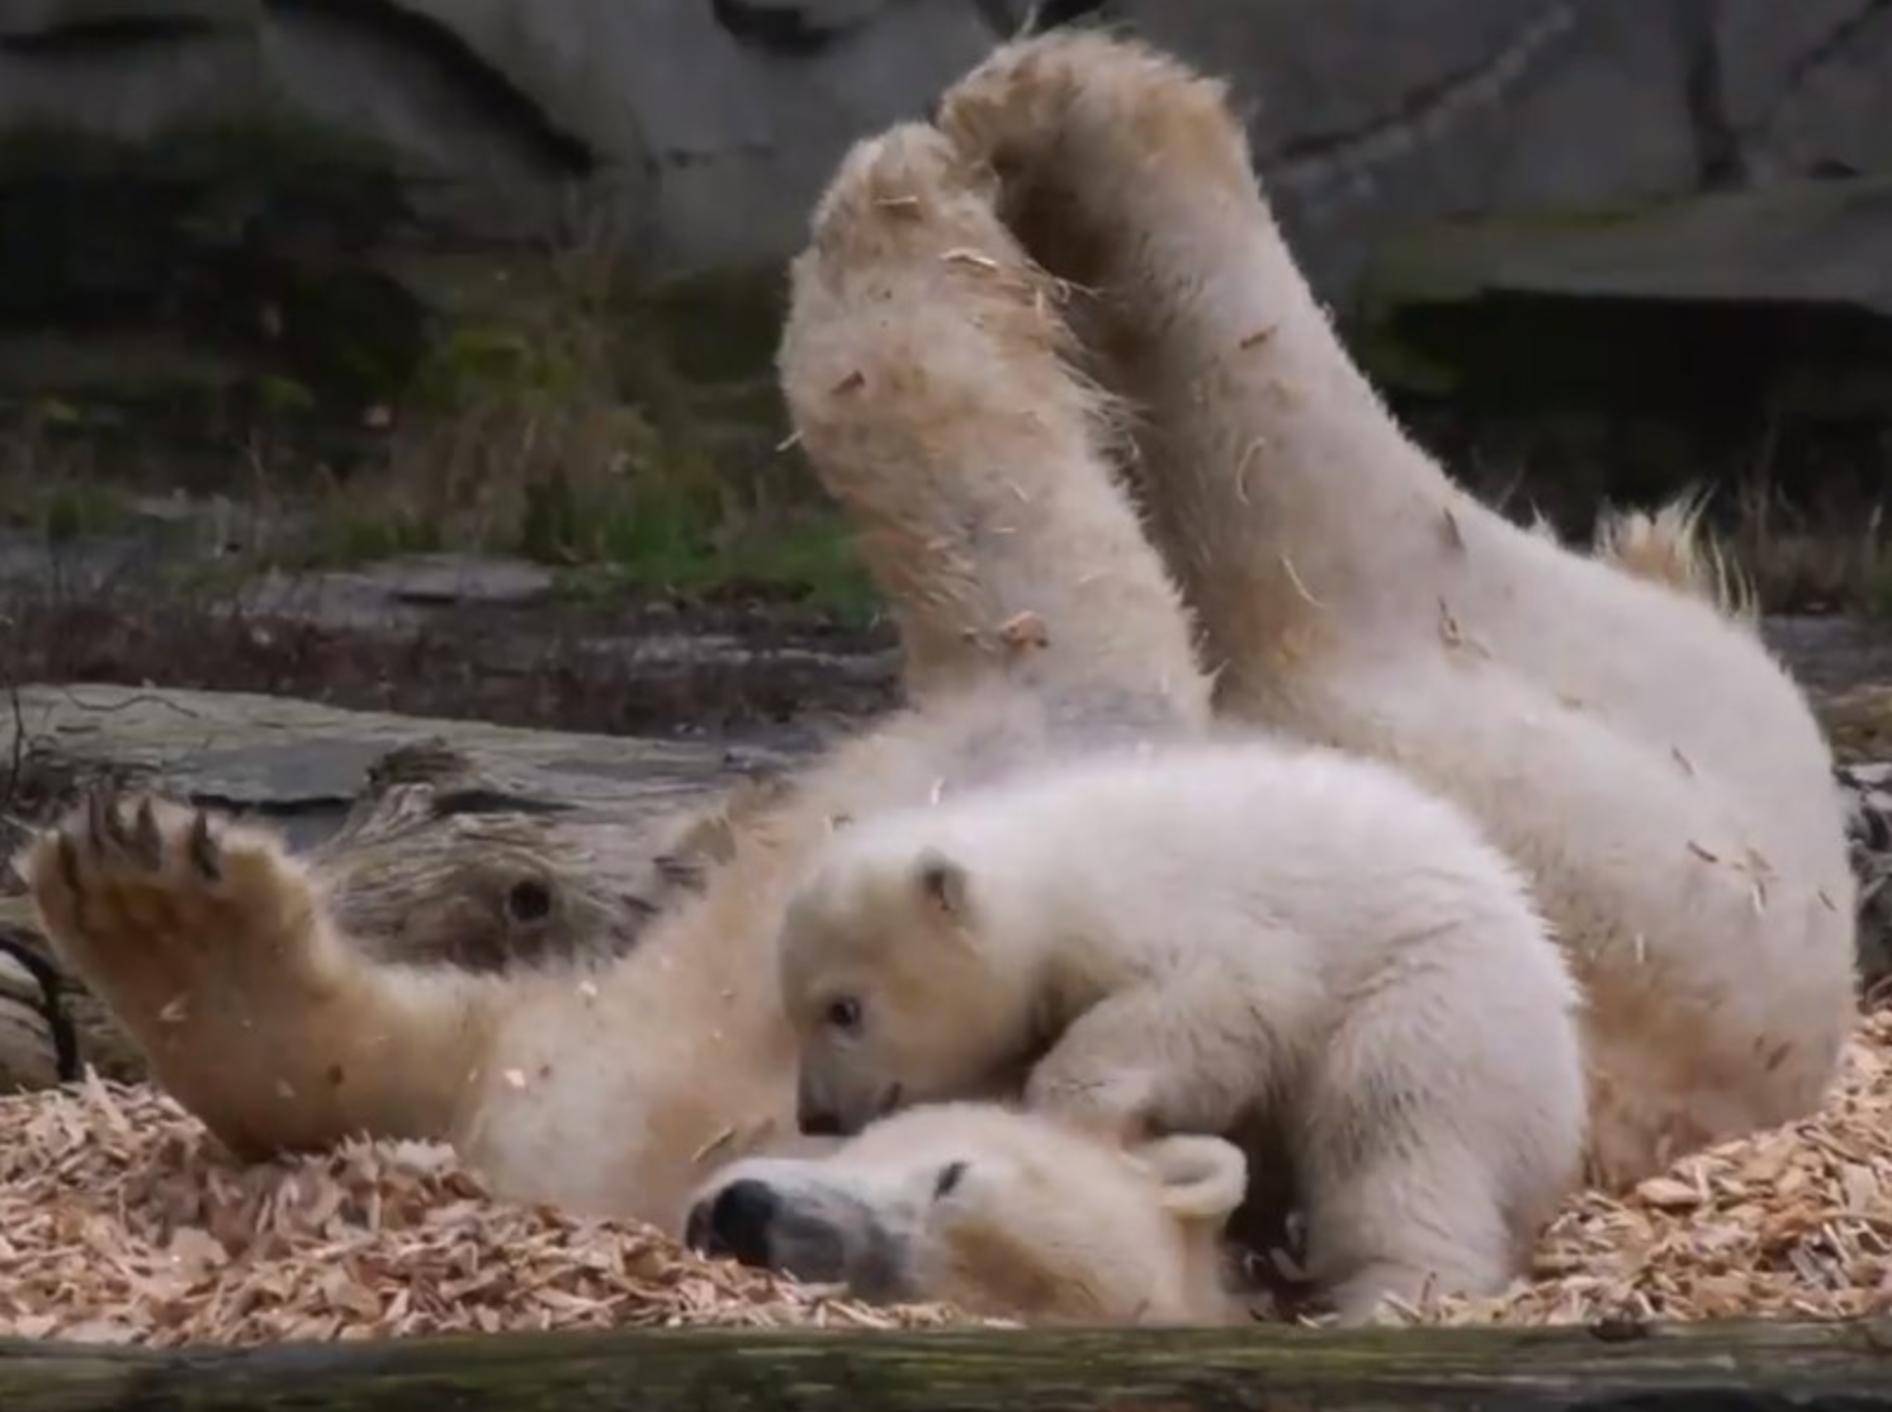 Eisbär-Baby Hertha wälzt sich mit Mama Tonja in Spänen - Bild: YouTube / Zoo und Tierpark Berlin